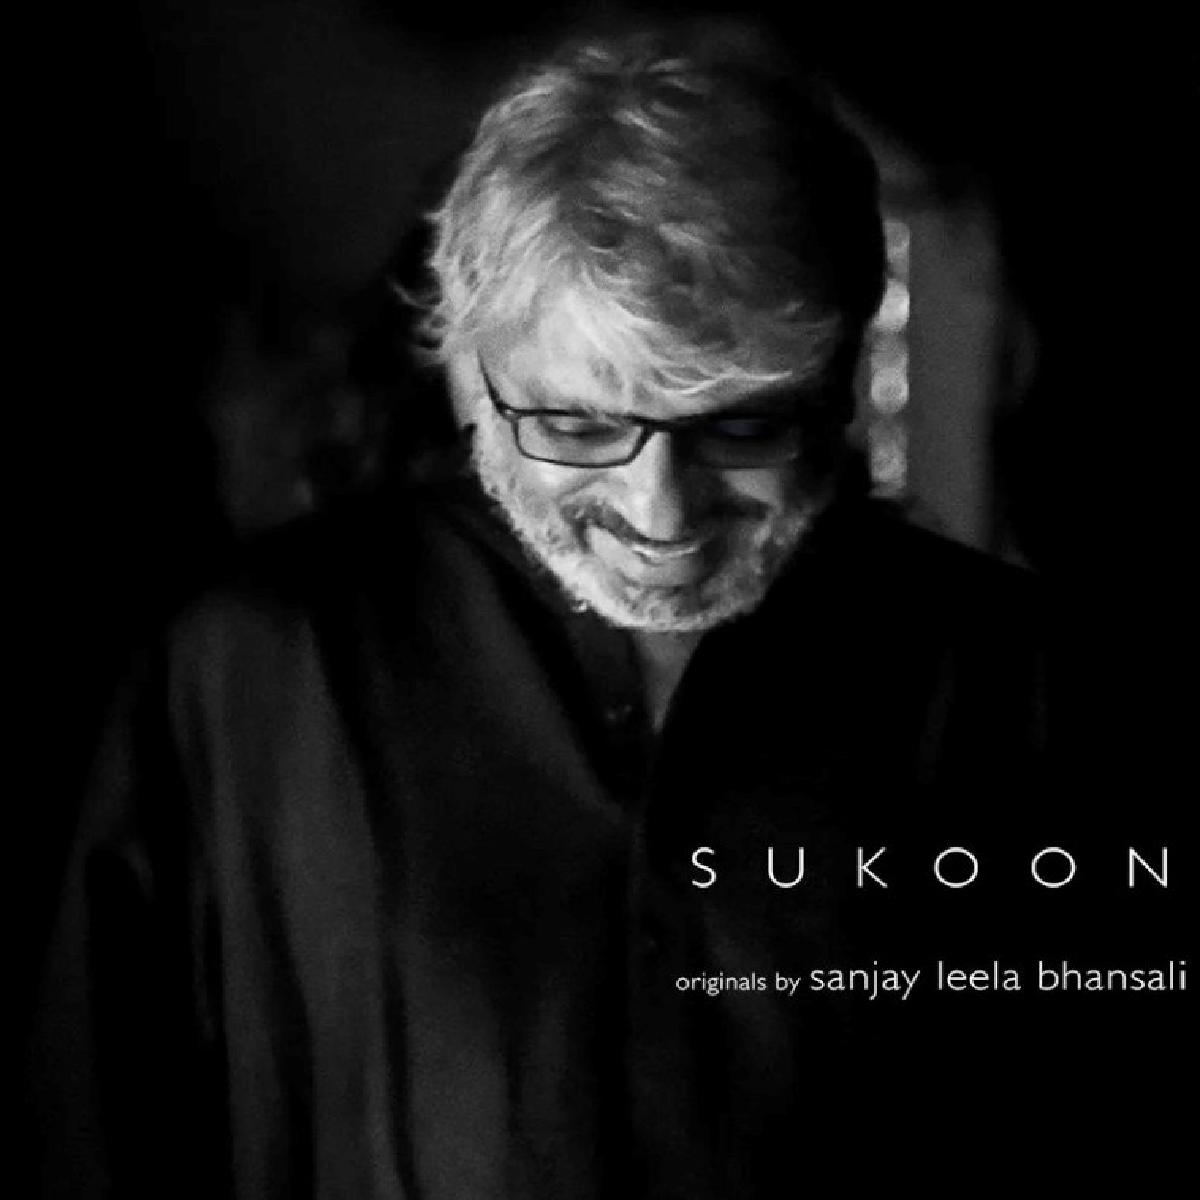 Sanjay Leela Bhansali’s Maiden Music Album Is Titled Sukoon